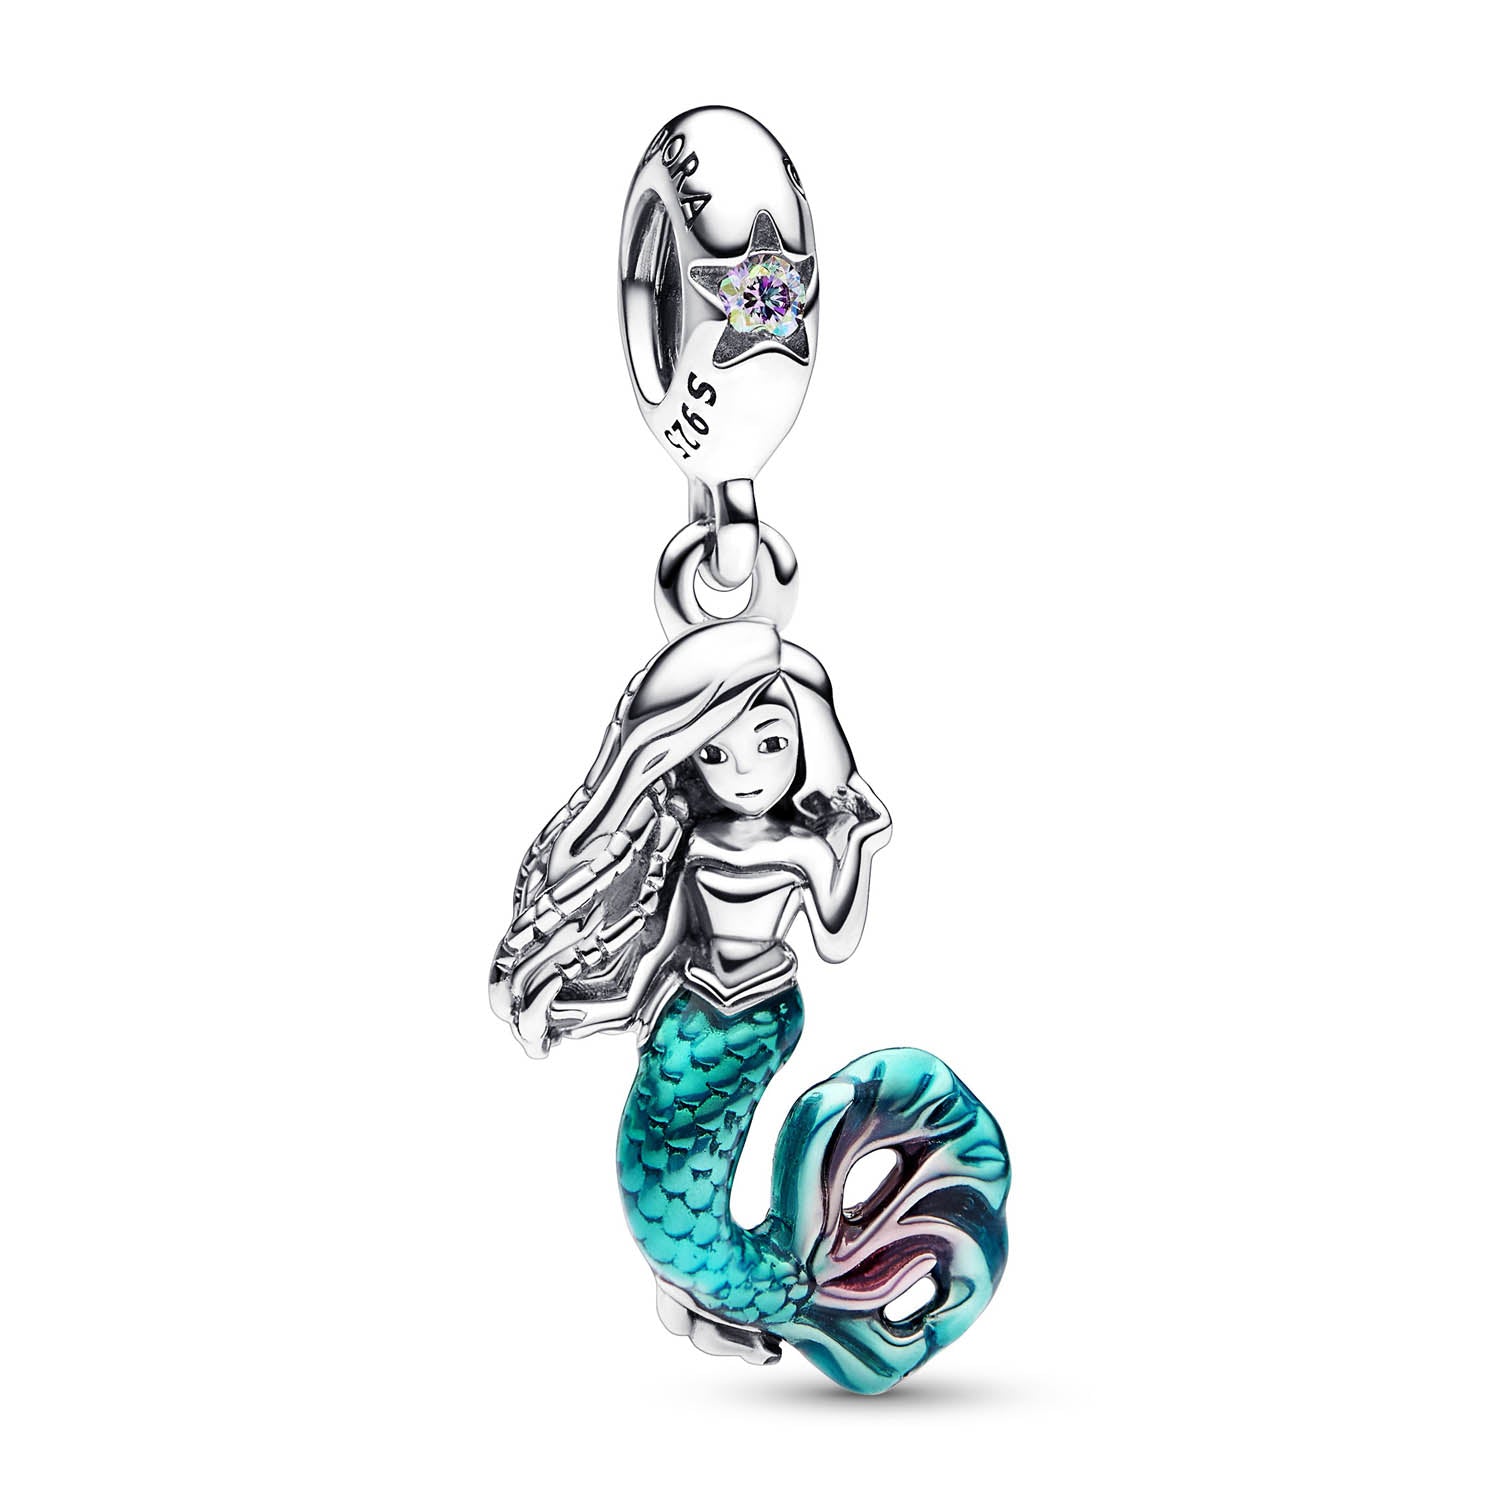 16: Pandora - Disney Little Mermaid dangle charm, Ariel Sølv sterlingsølv